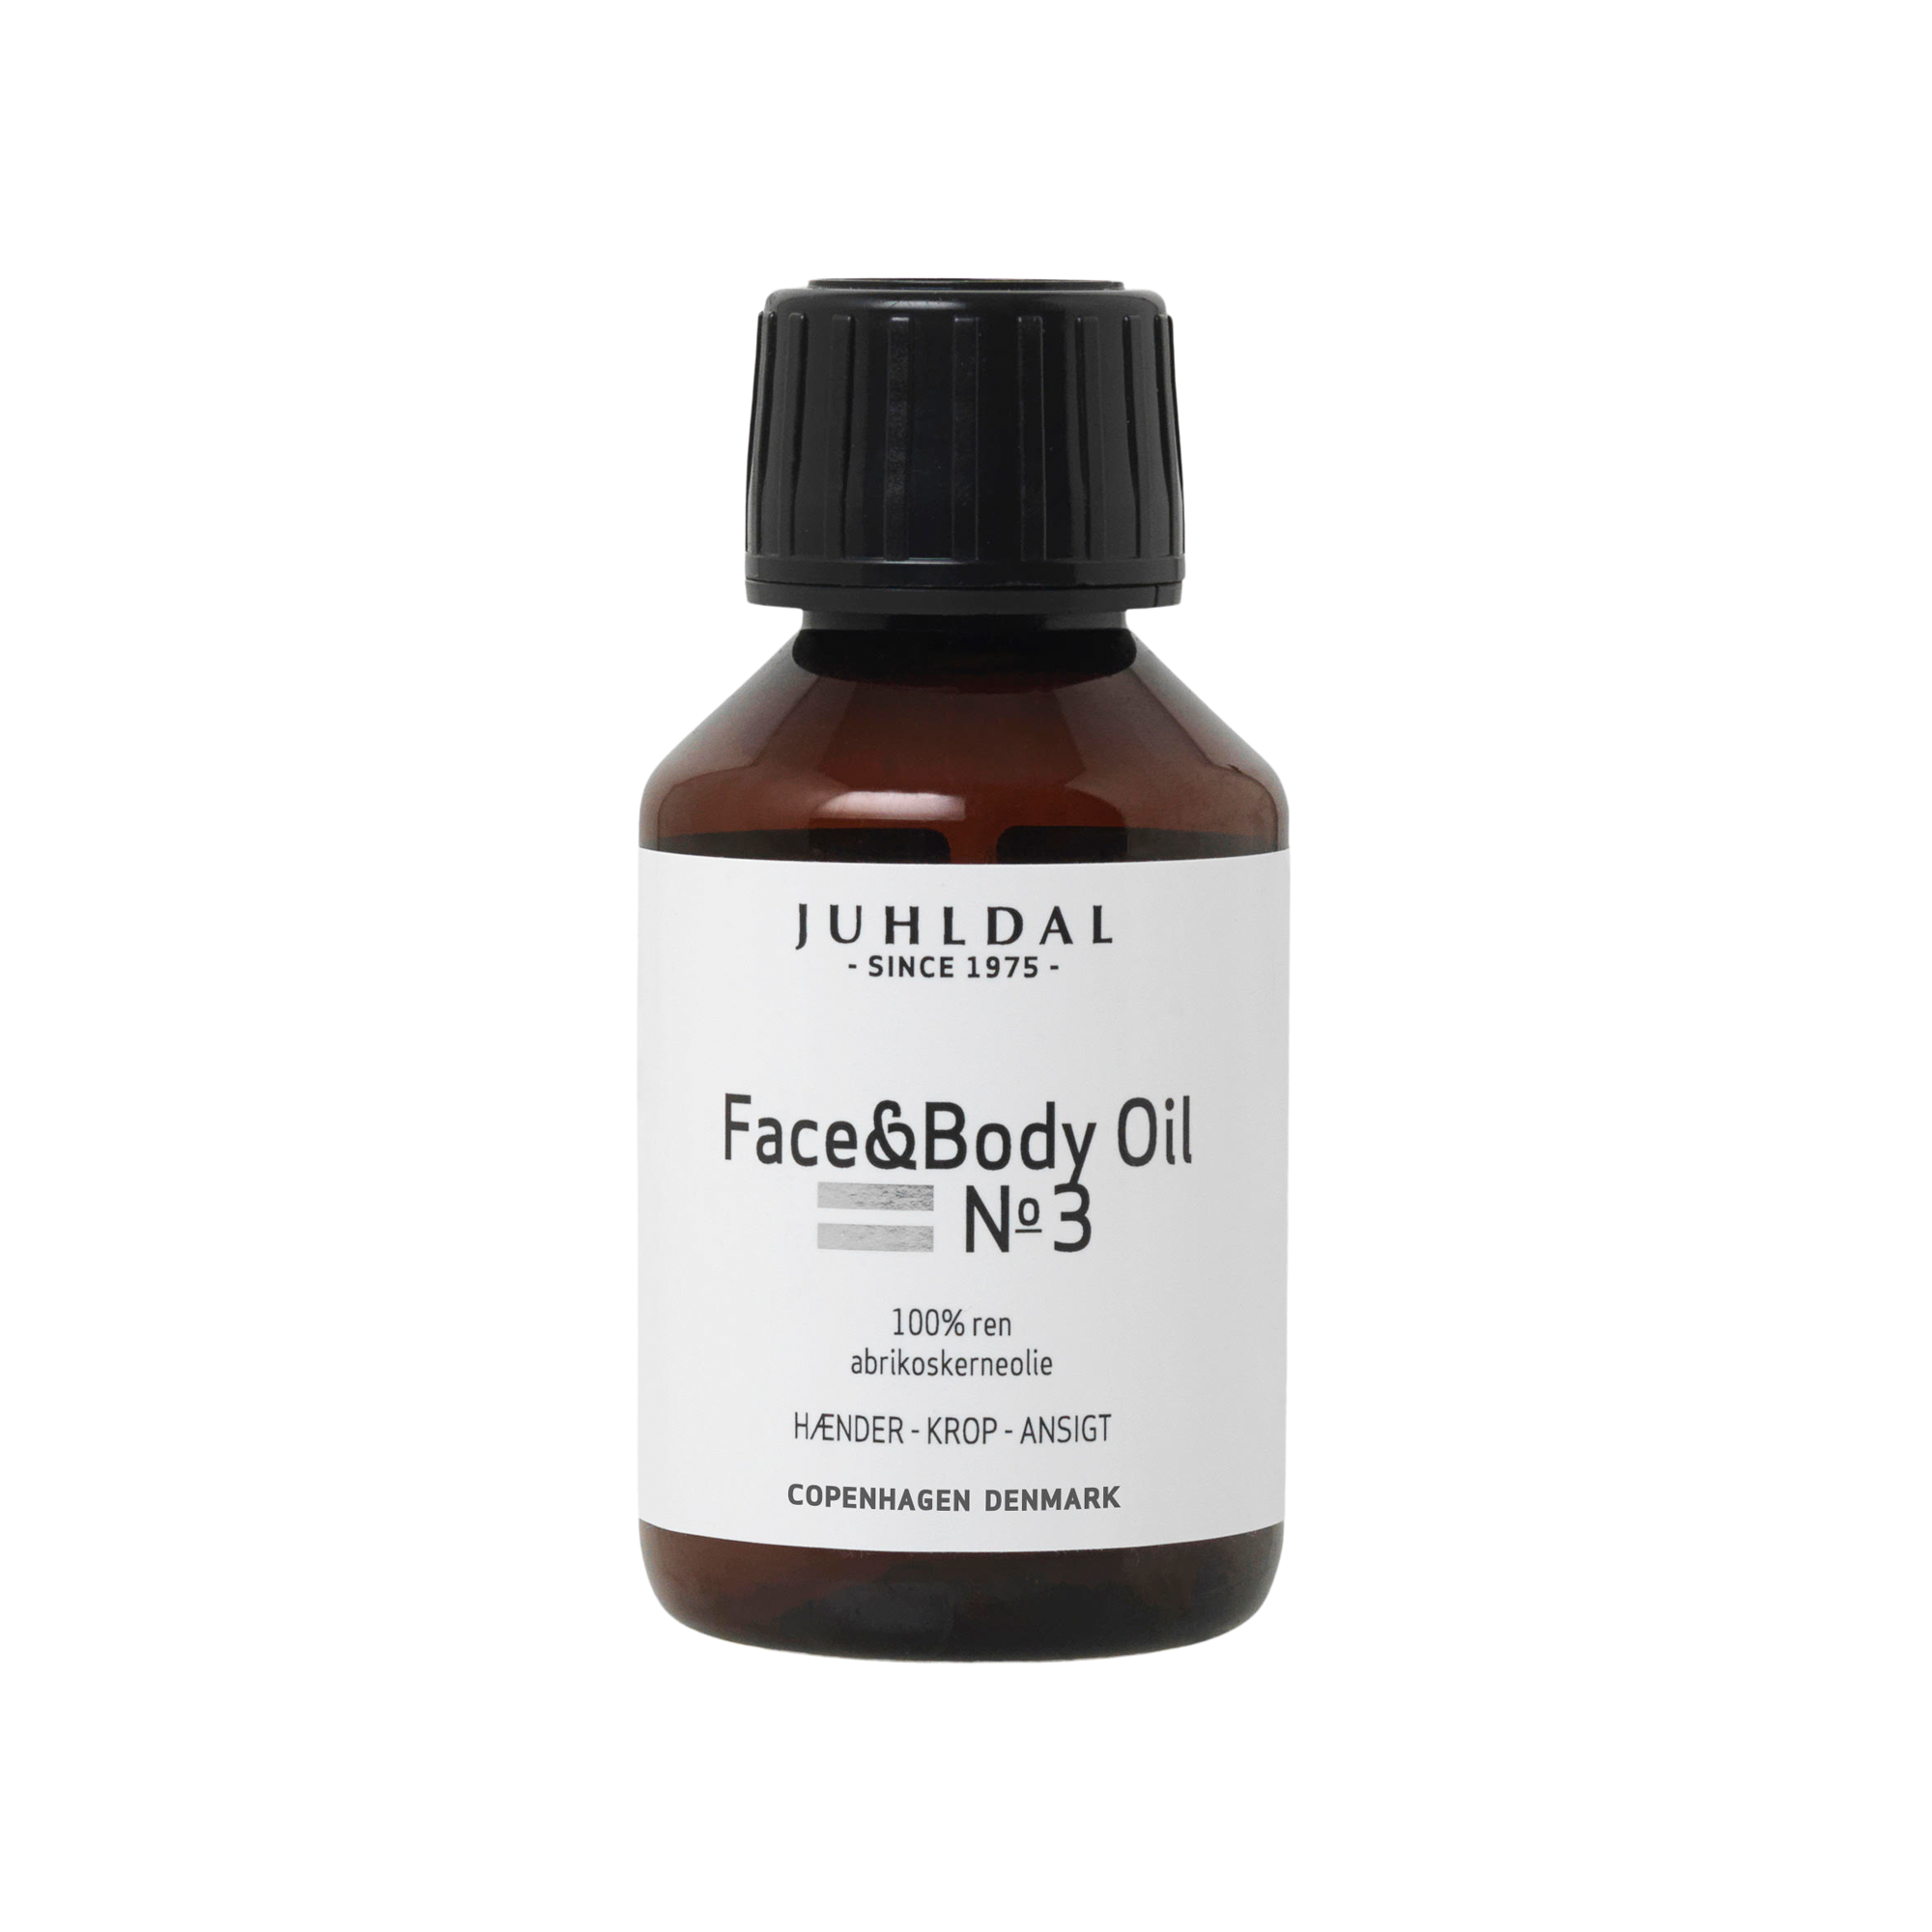 Face & Body Oil NO 3